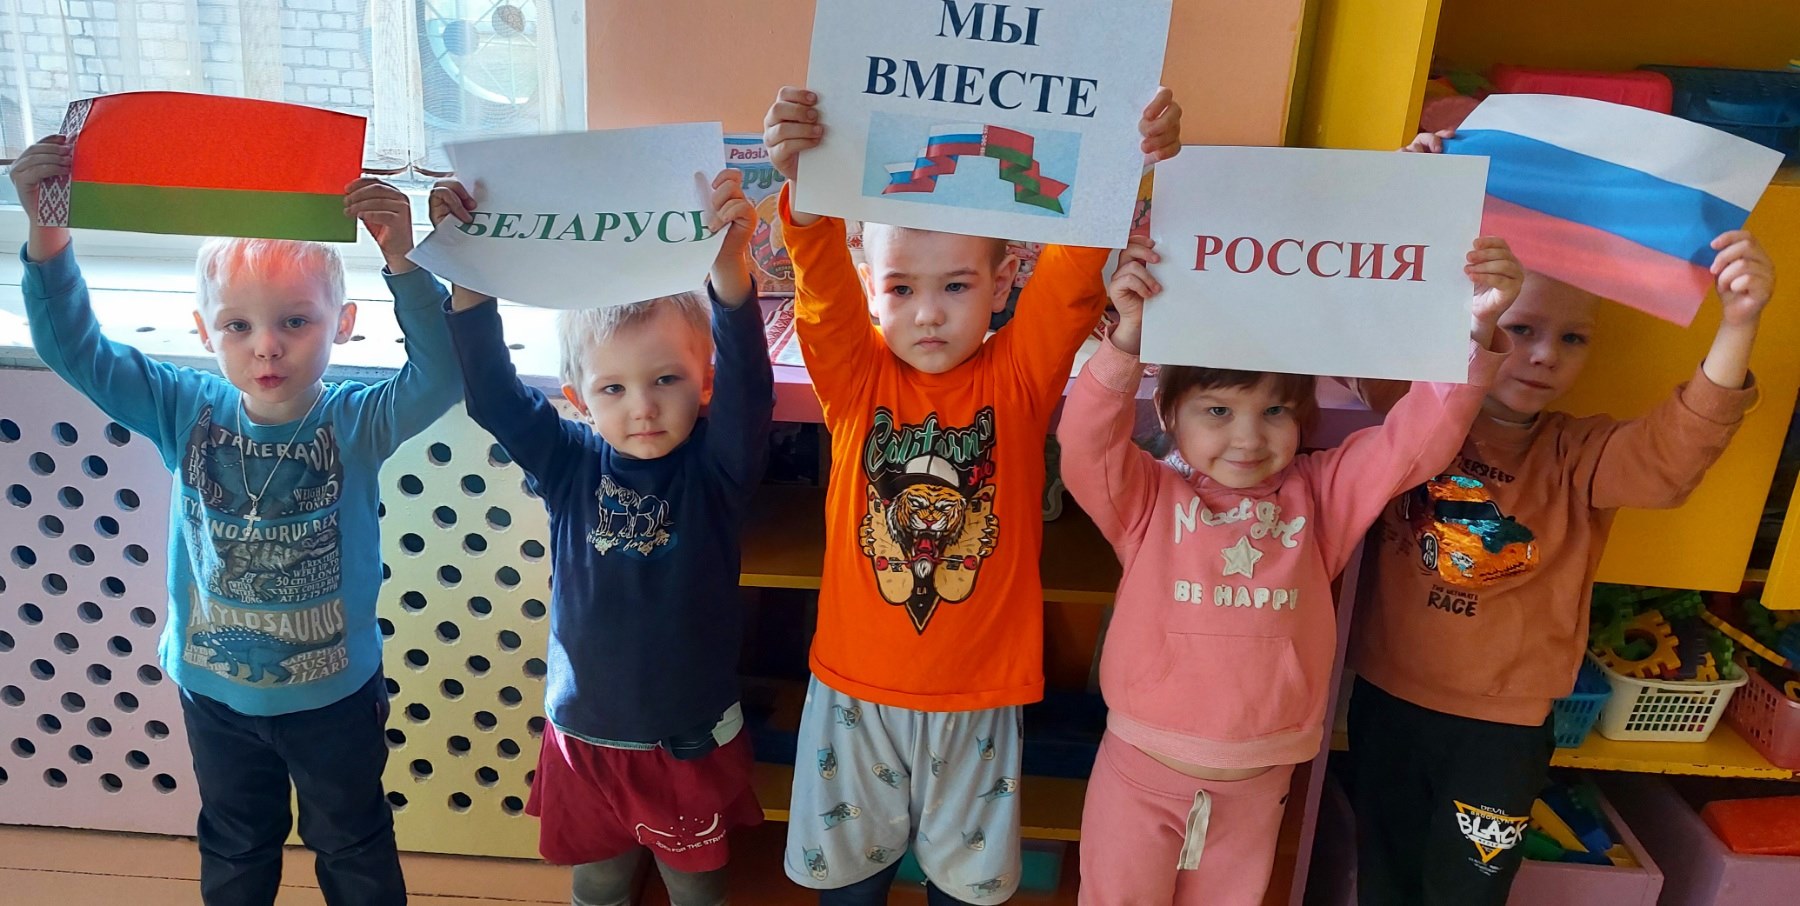 2 апреля отмечается День единения народов Беларуси и России